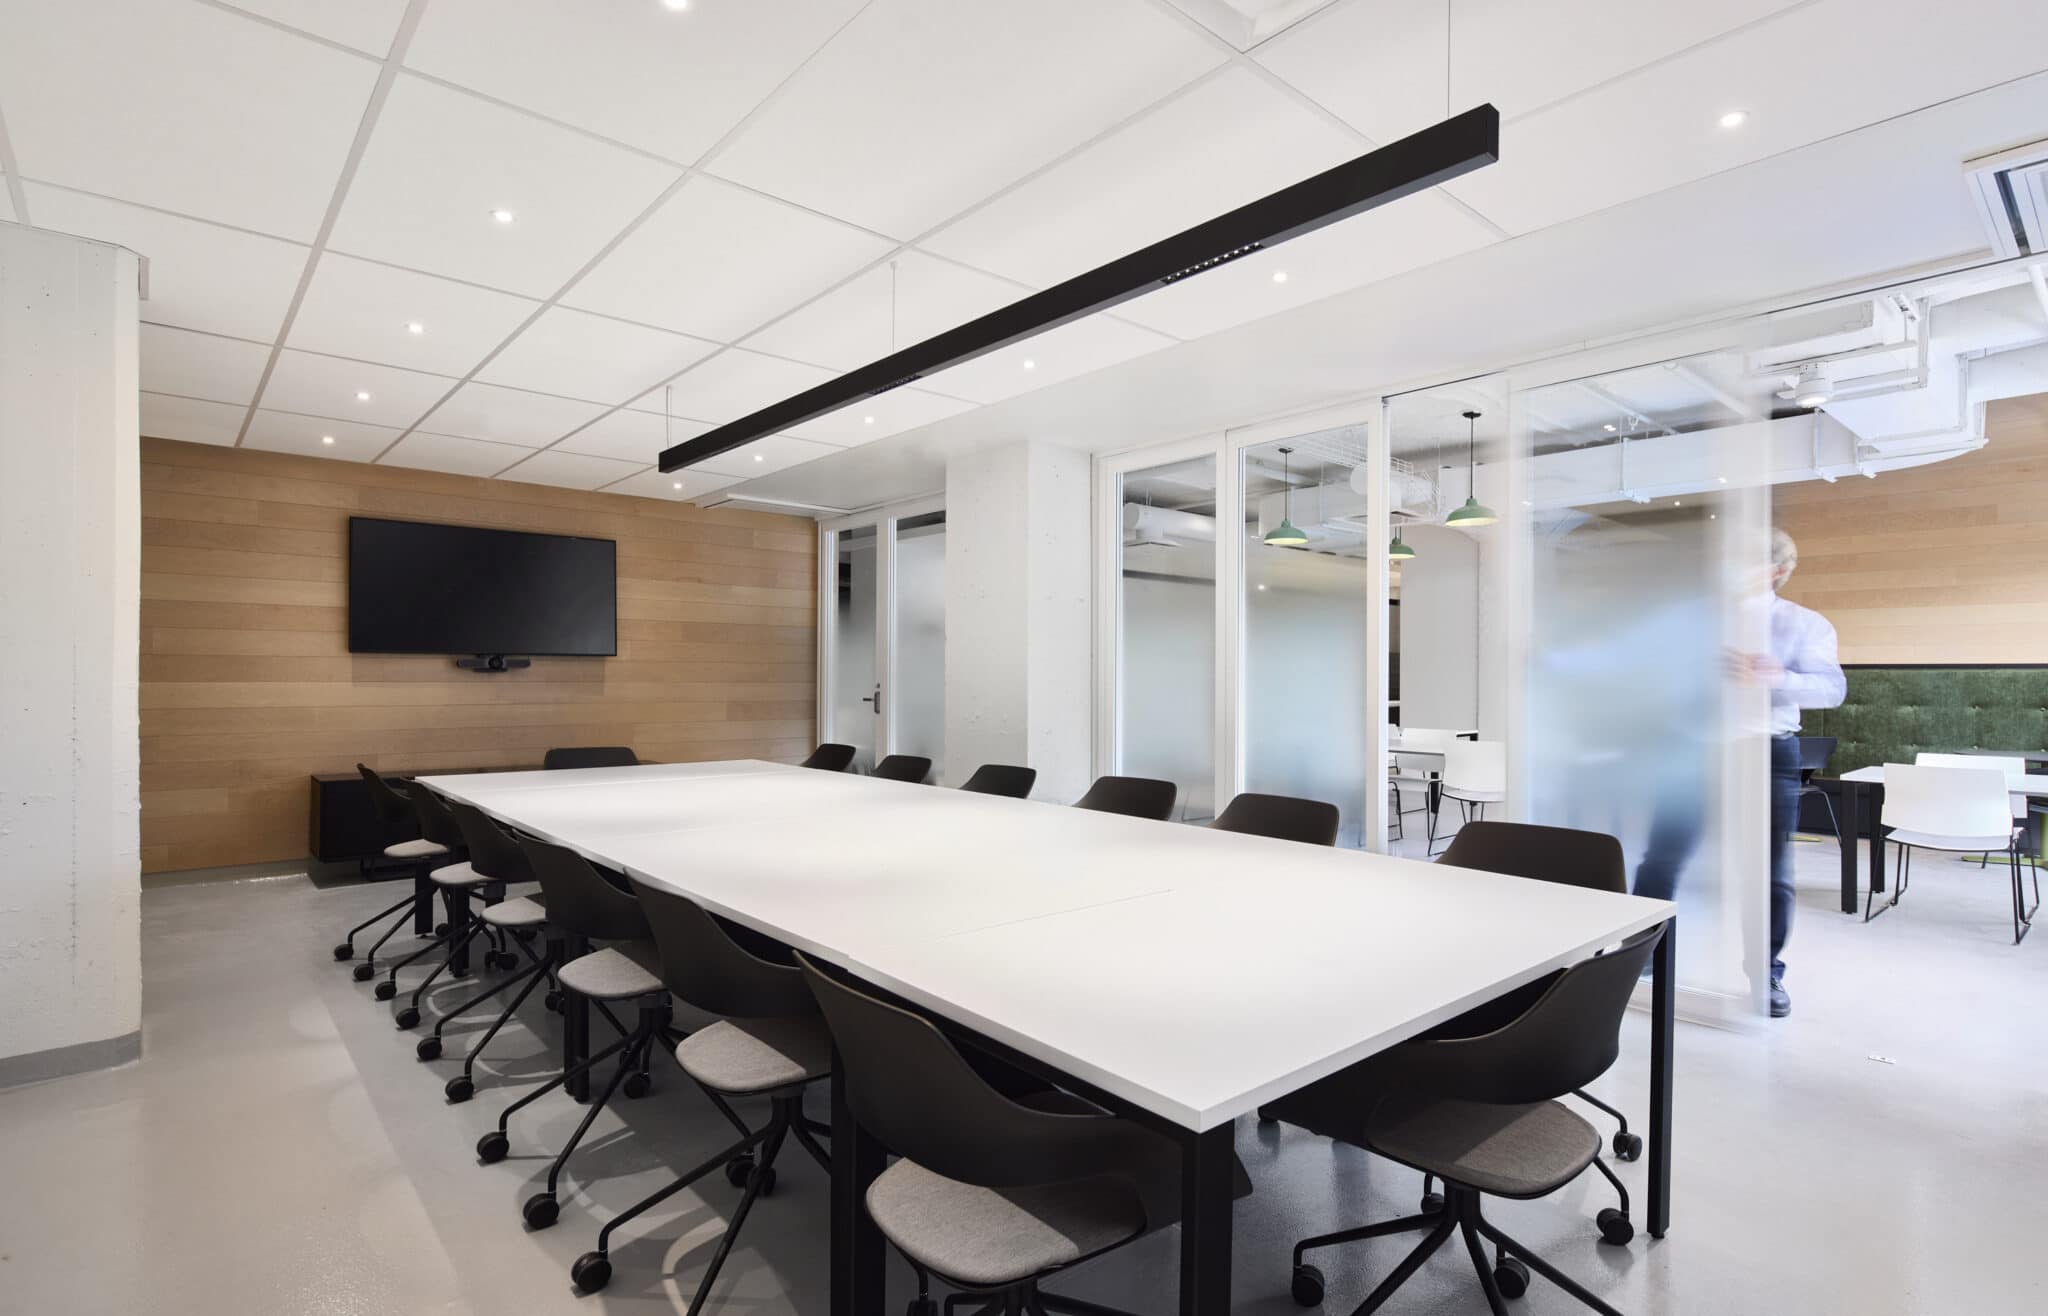 Projet de design corporatif - Salle agile au siège social de Morgan Schaffer à Montréal par VAD Designers d'intérieur commercial.